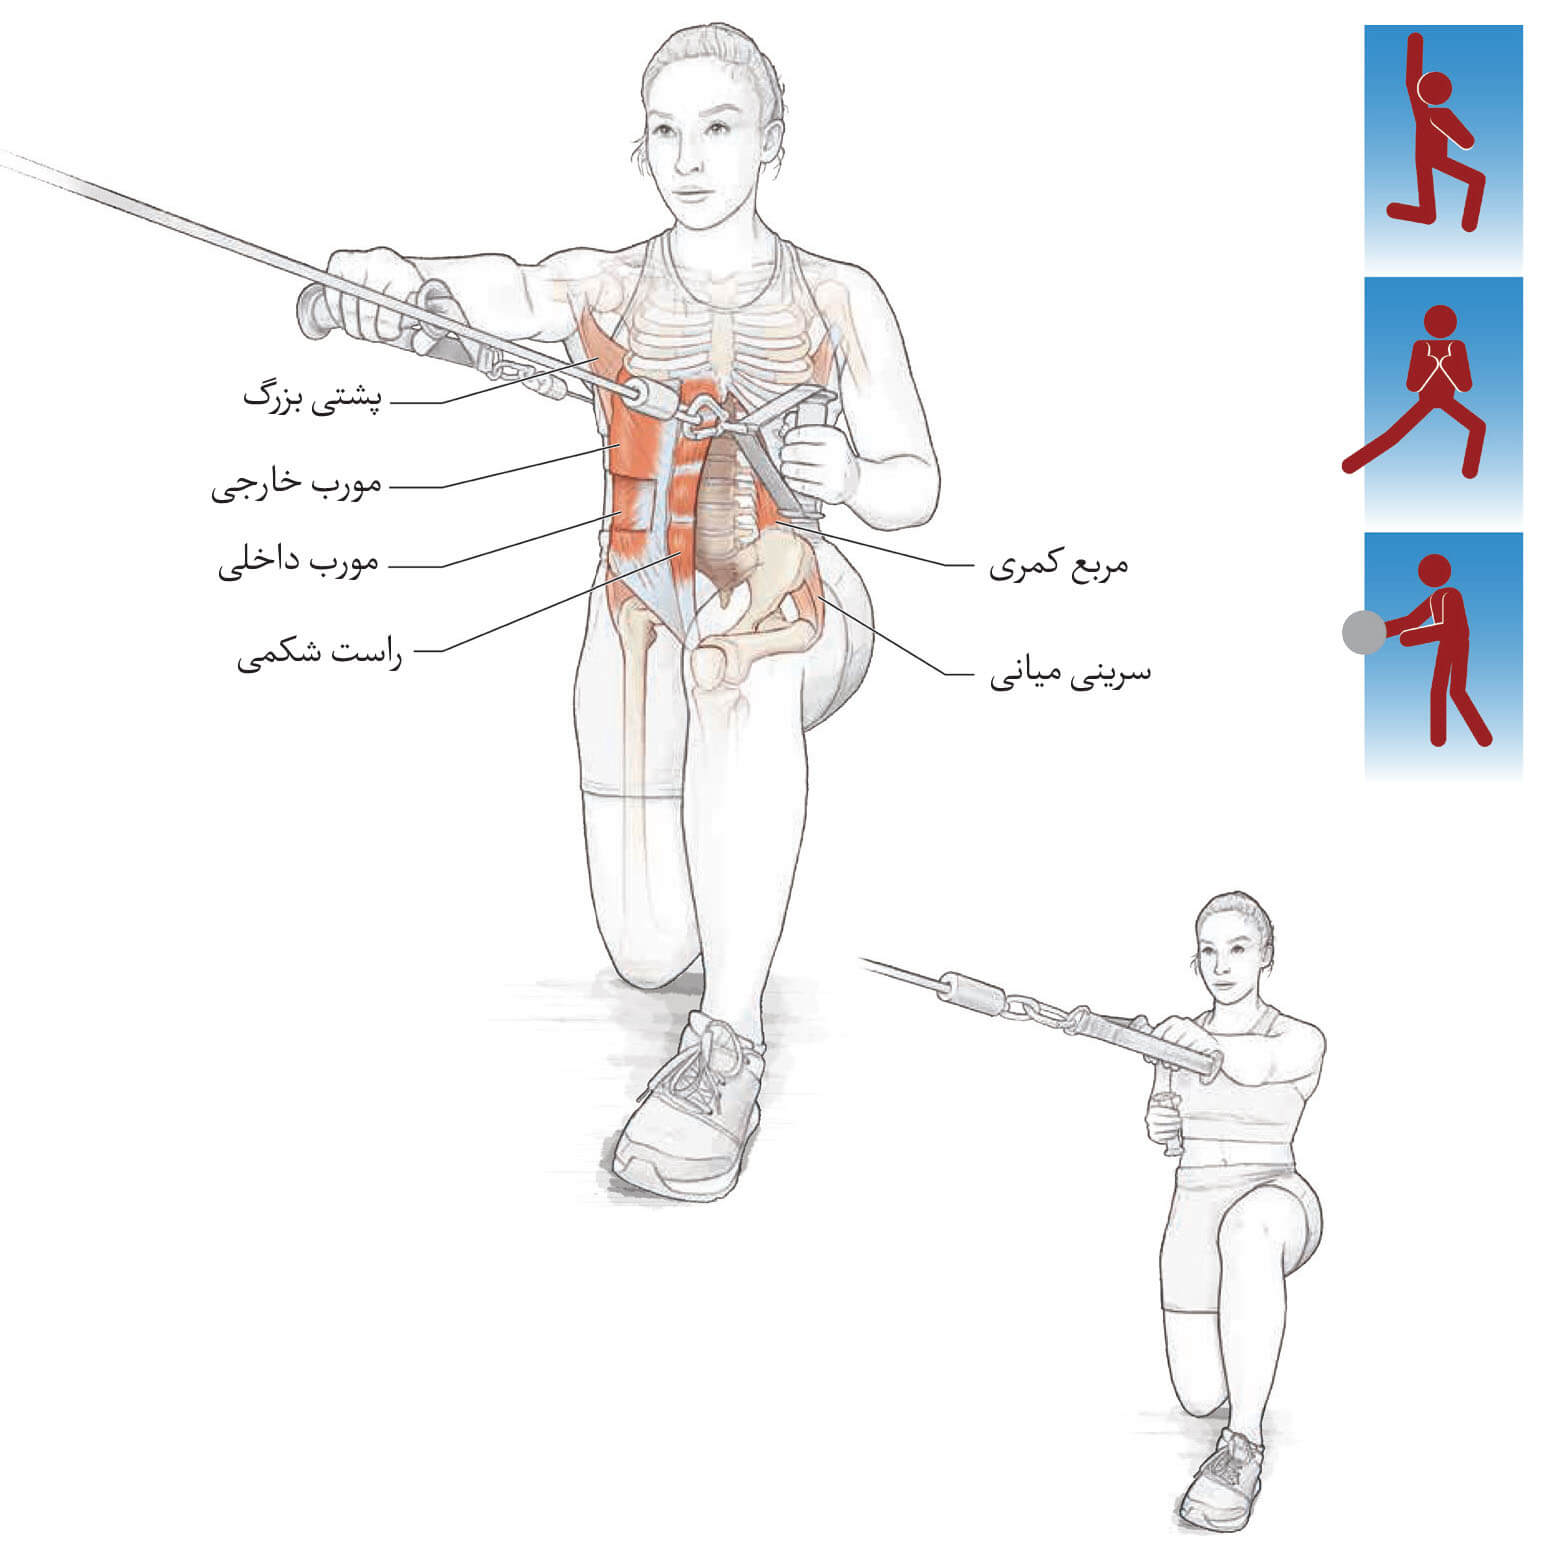 تمرینات ضد عضلات مرکزی | تمرینات مرکزی